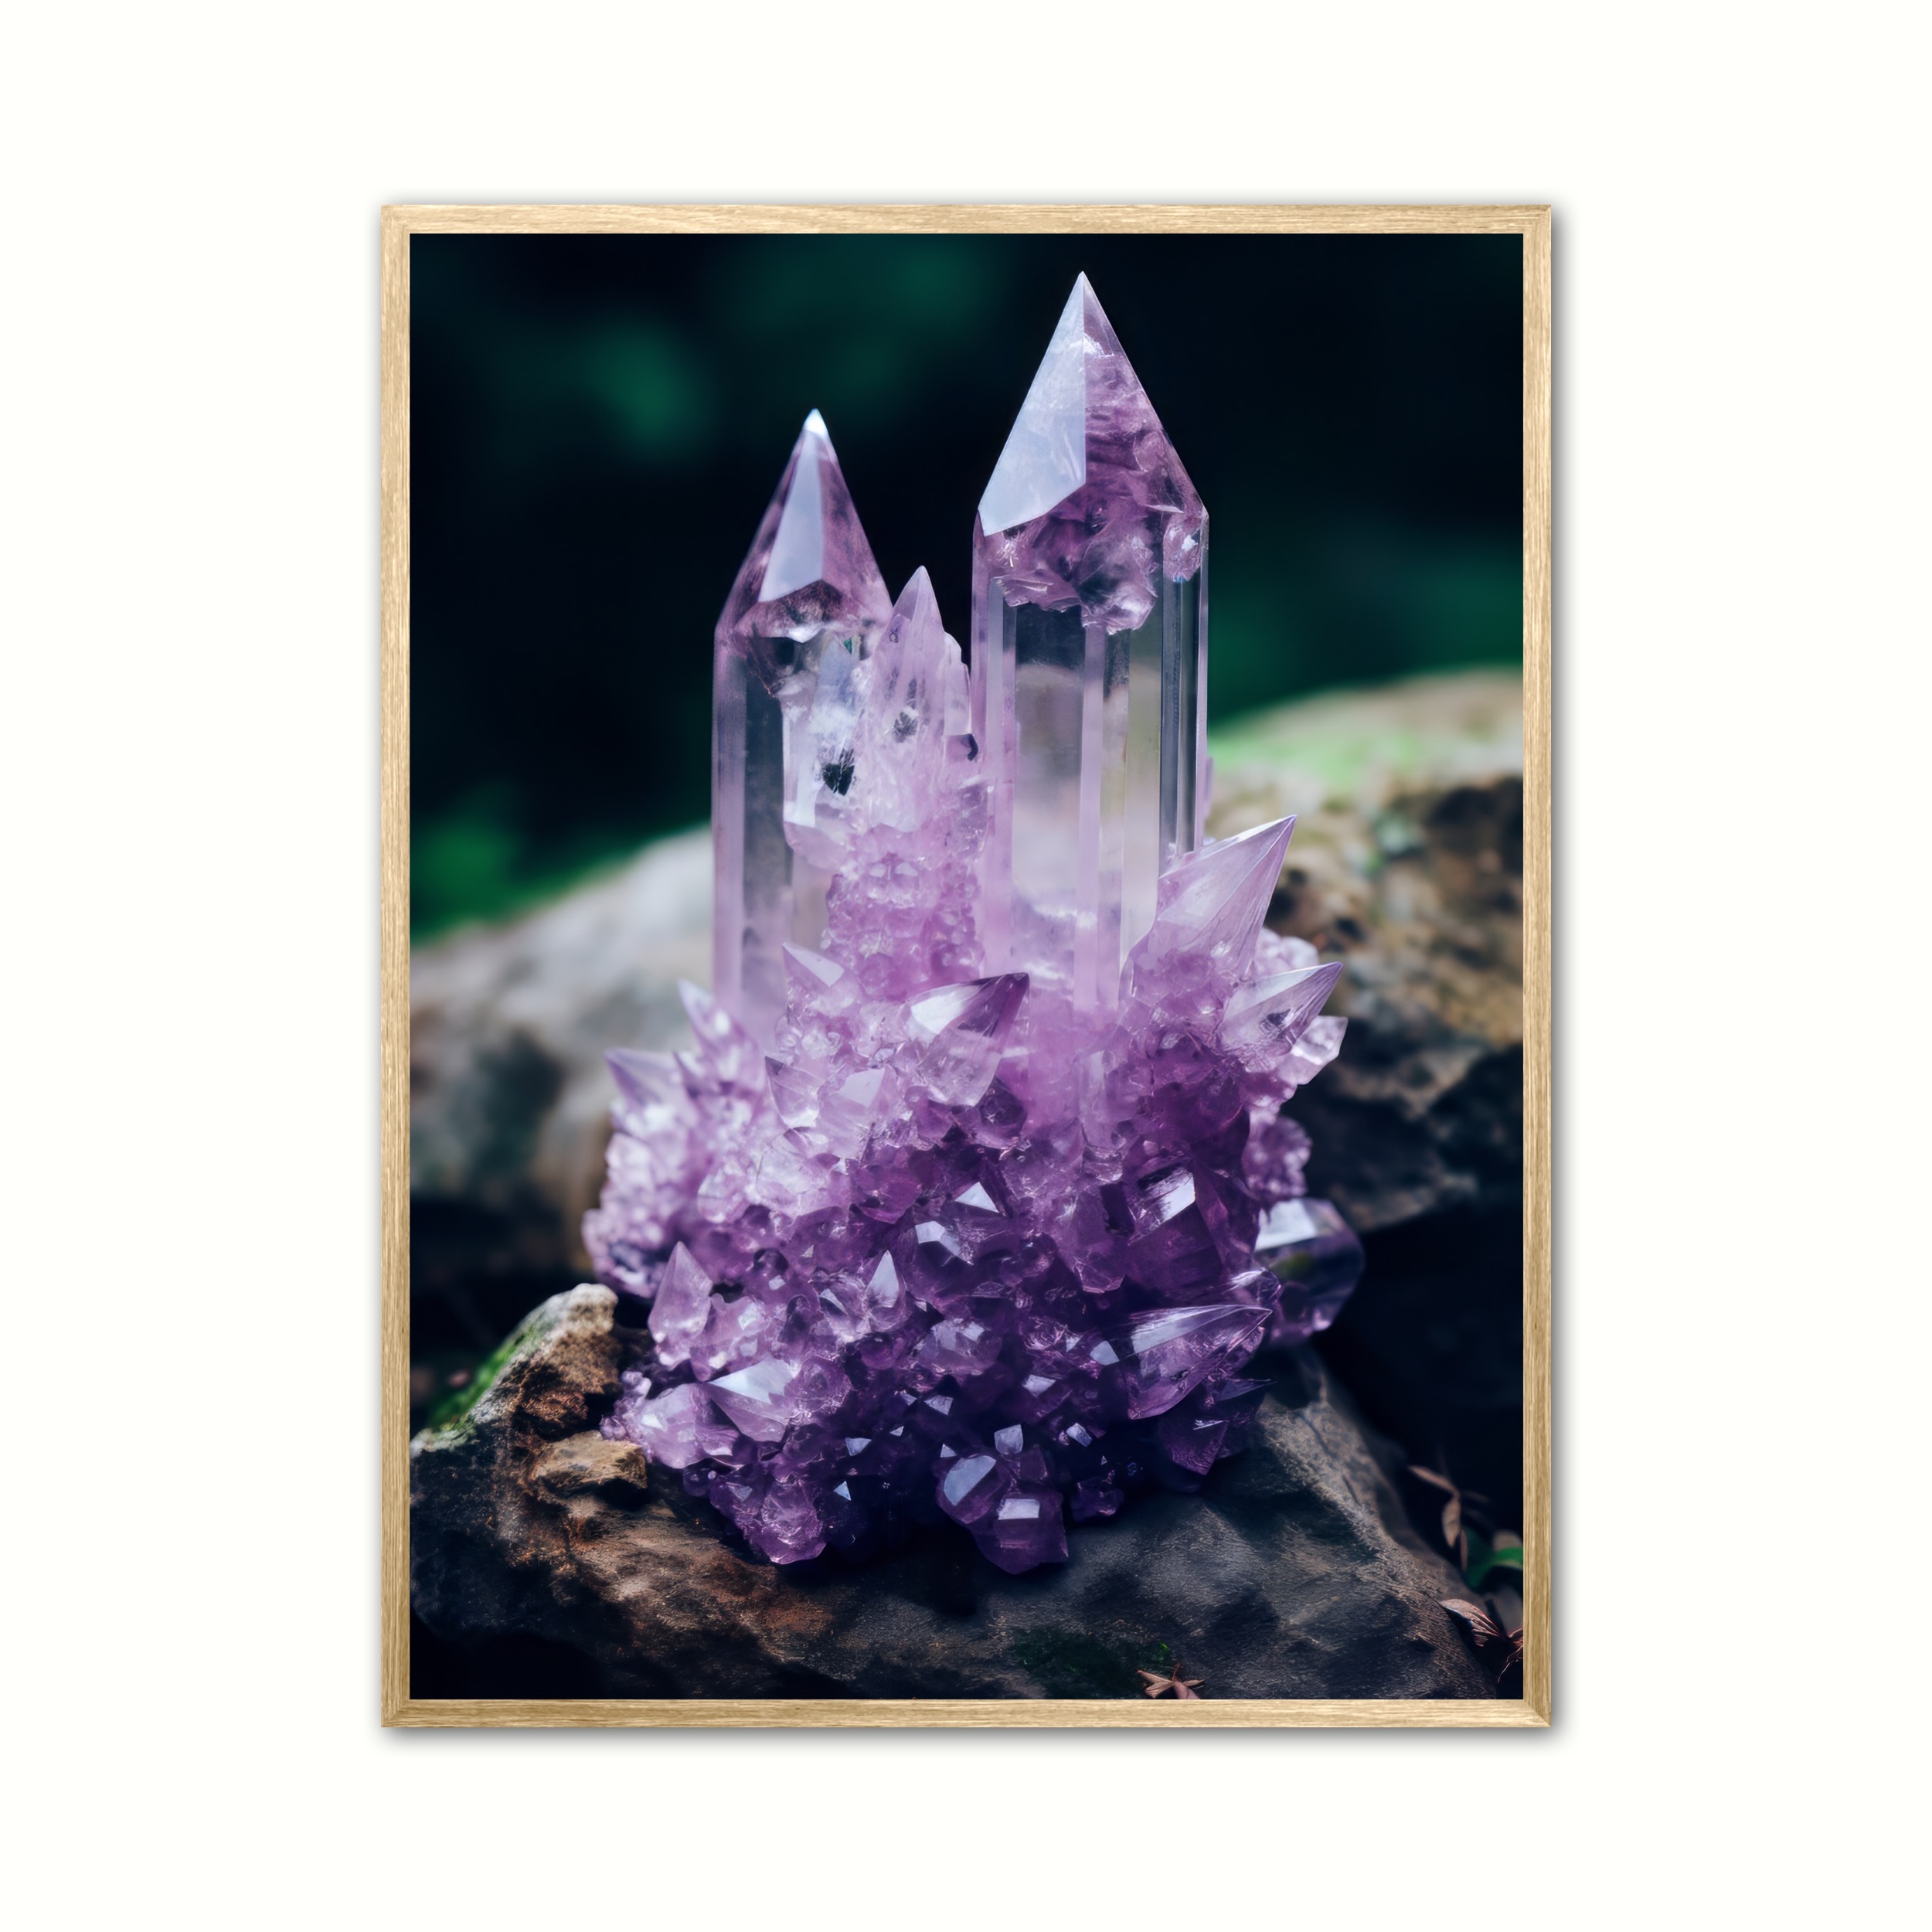 Plakat med Ametyst Nr. 2 - Krystaller 21 x 29,7 cm (A4)